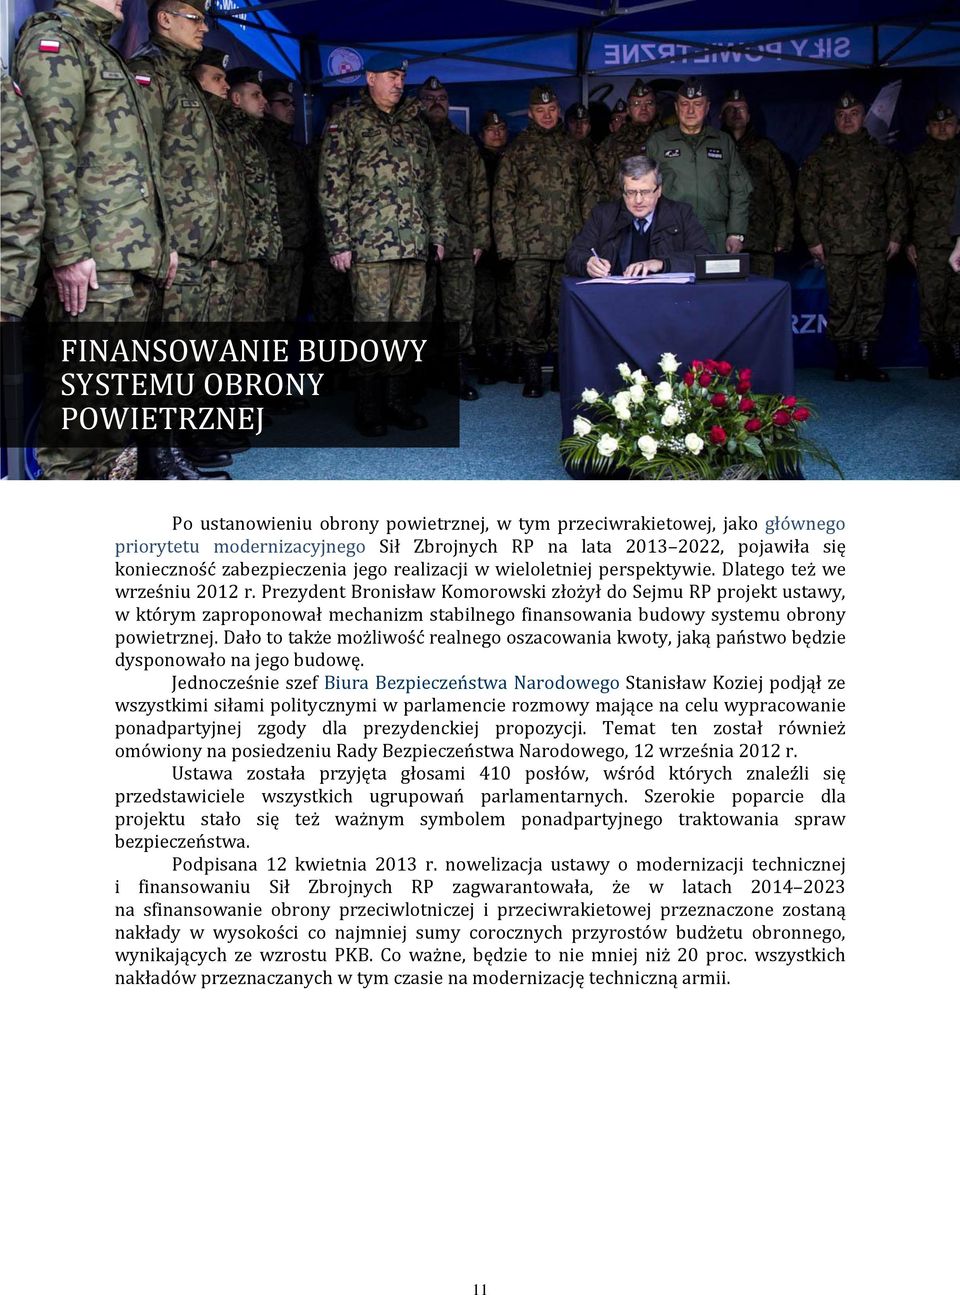 Prezydent Bronisław Komorowski złożył do Sejmu RP projekt ustawy, w którym zaproponował mechanizm stabilnego finansowania budowy systemu obrony powietrznej.